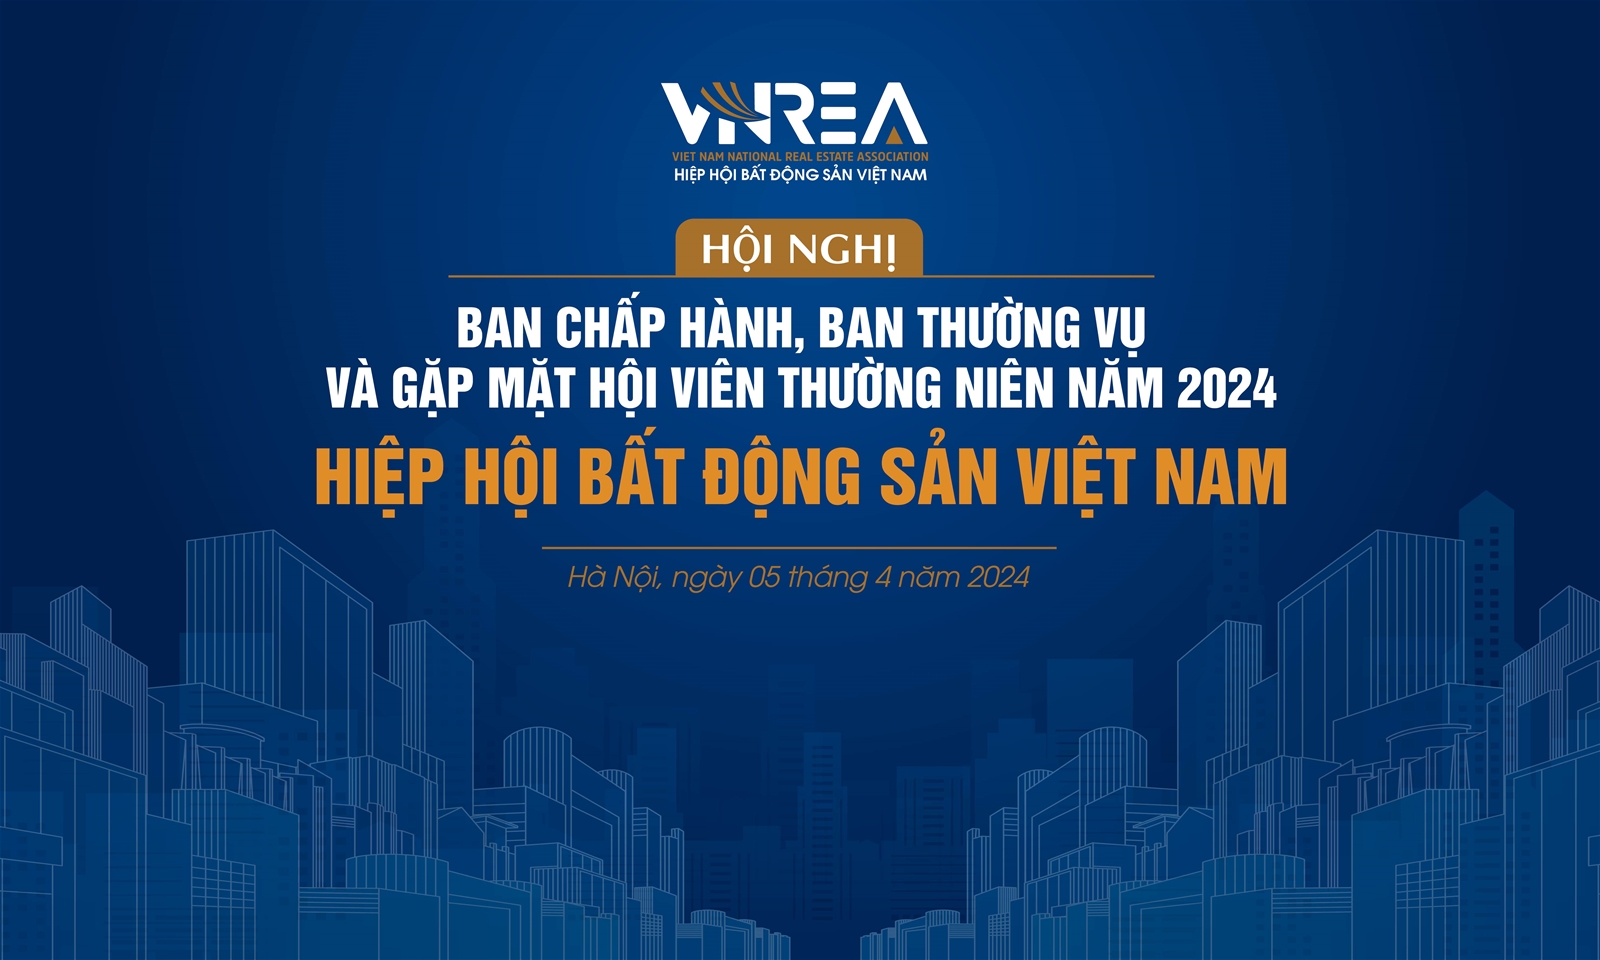  VNREA tổ chức Hội nghị Ban Chấp hành, Ban Thường vụ và gặp mặt Hội viên năm 2024: Giao lưu chia sẻ, đồng hành gắn kết 